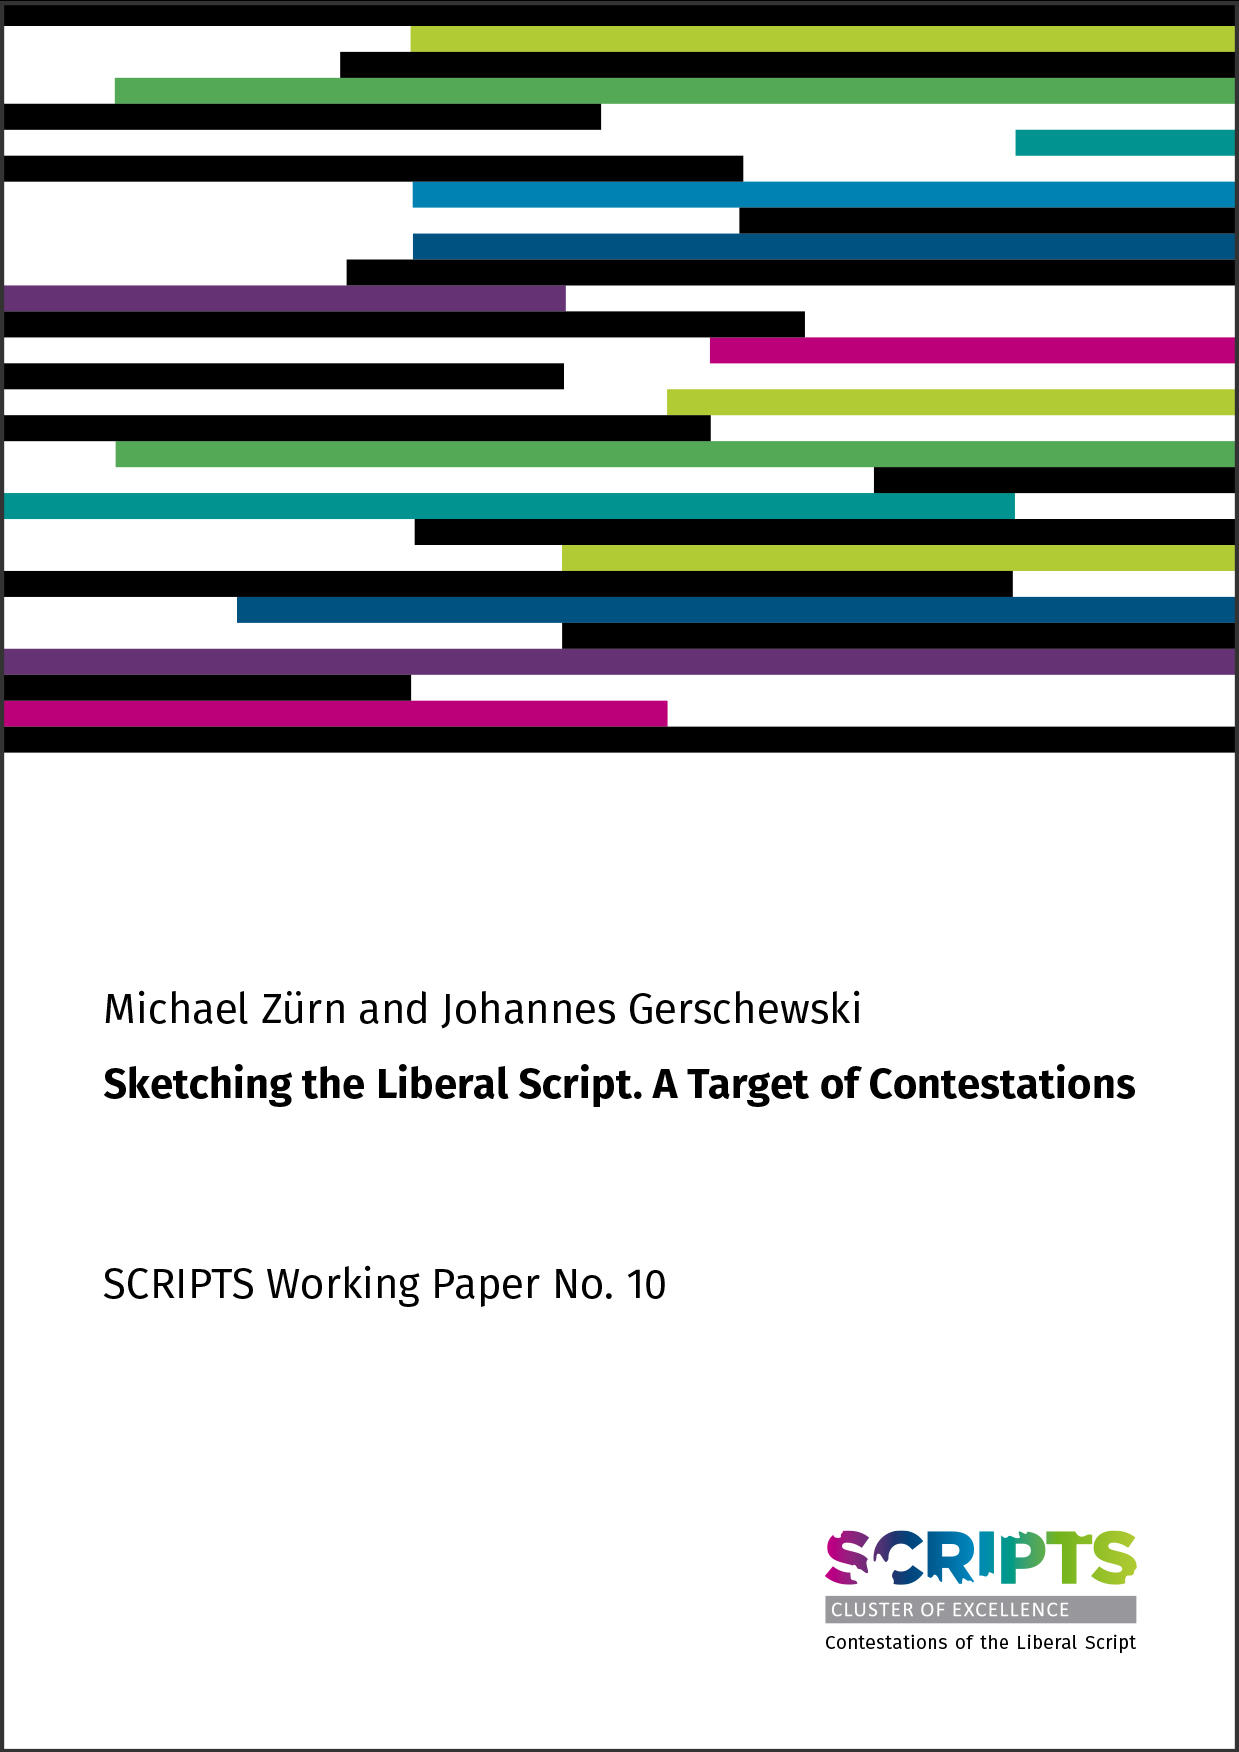 SCRIPTS_Working_Paper_Titel-10